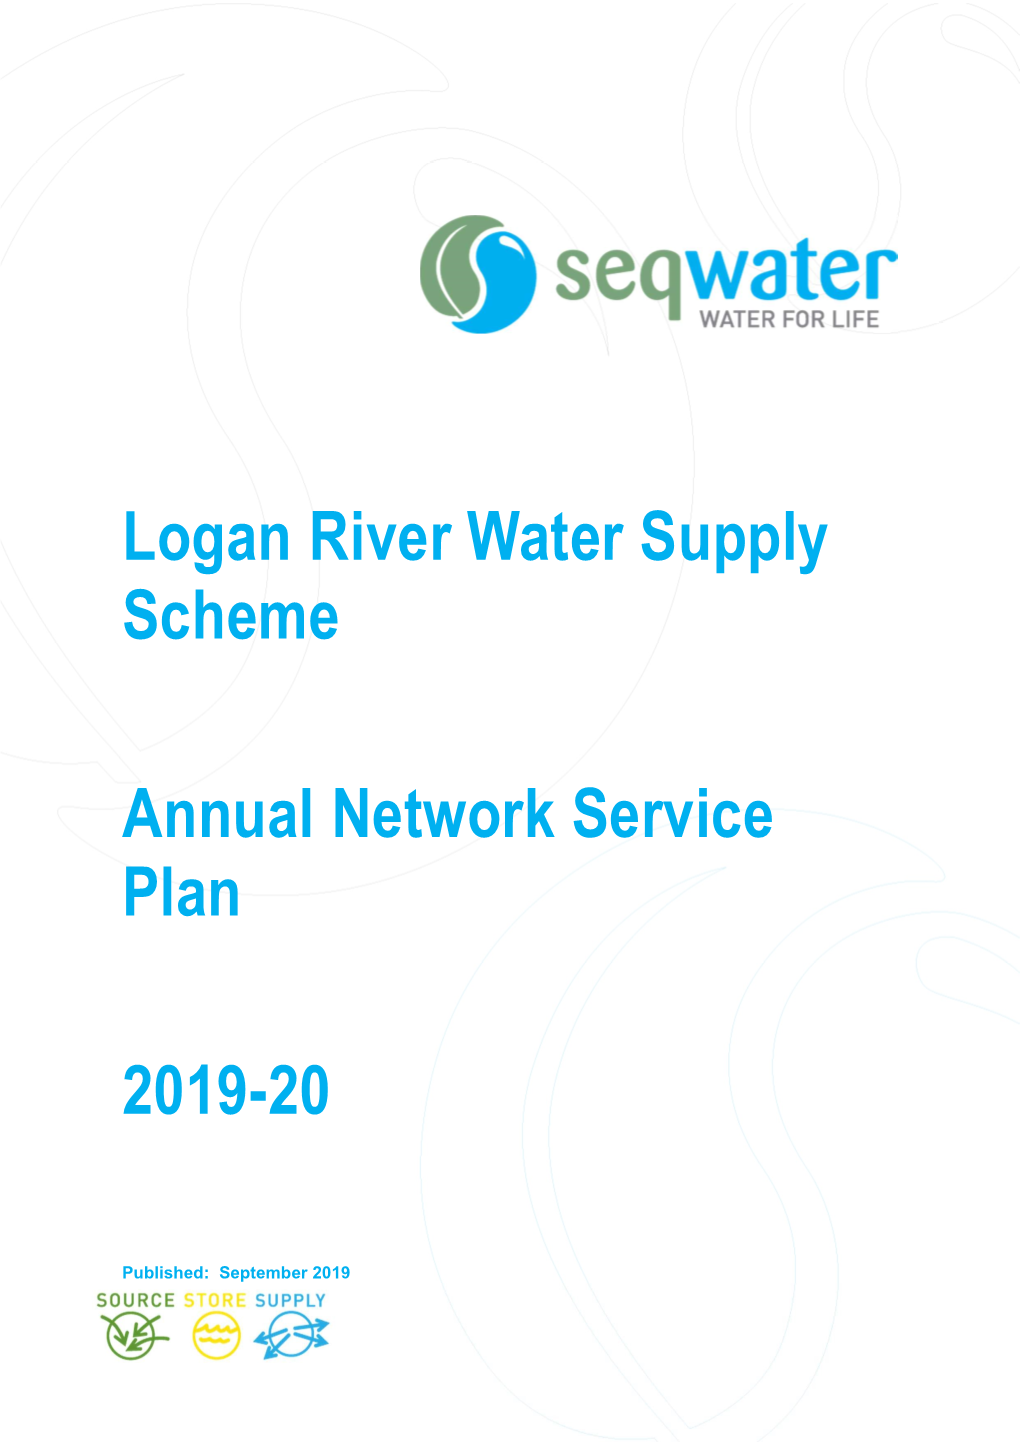 Logan River Water Supply Scheme Annual Network Service Plan 2019